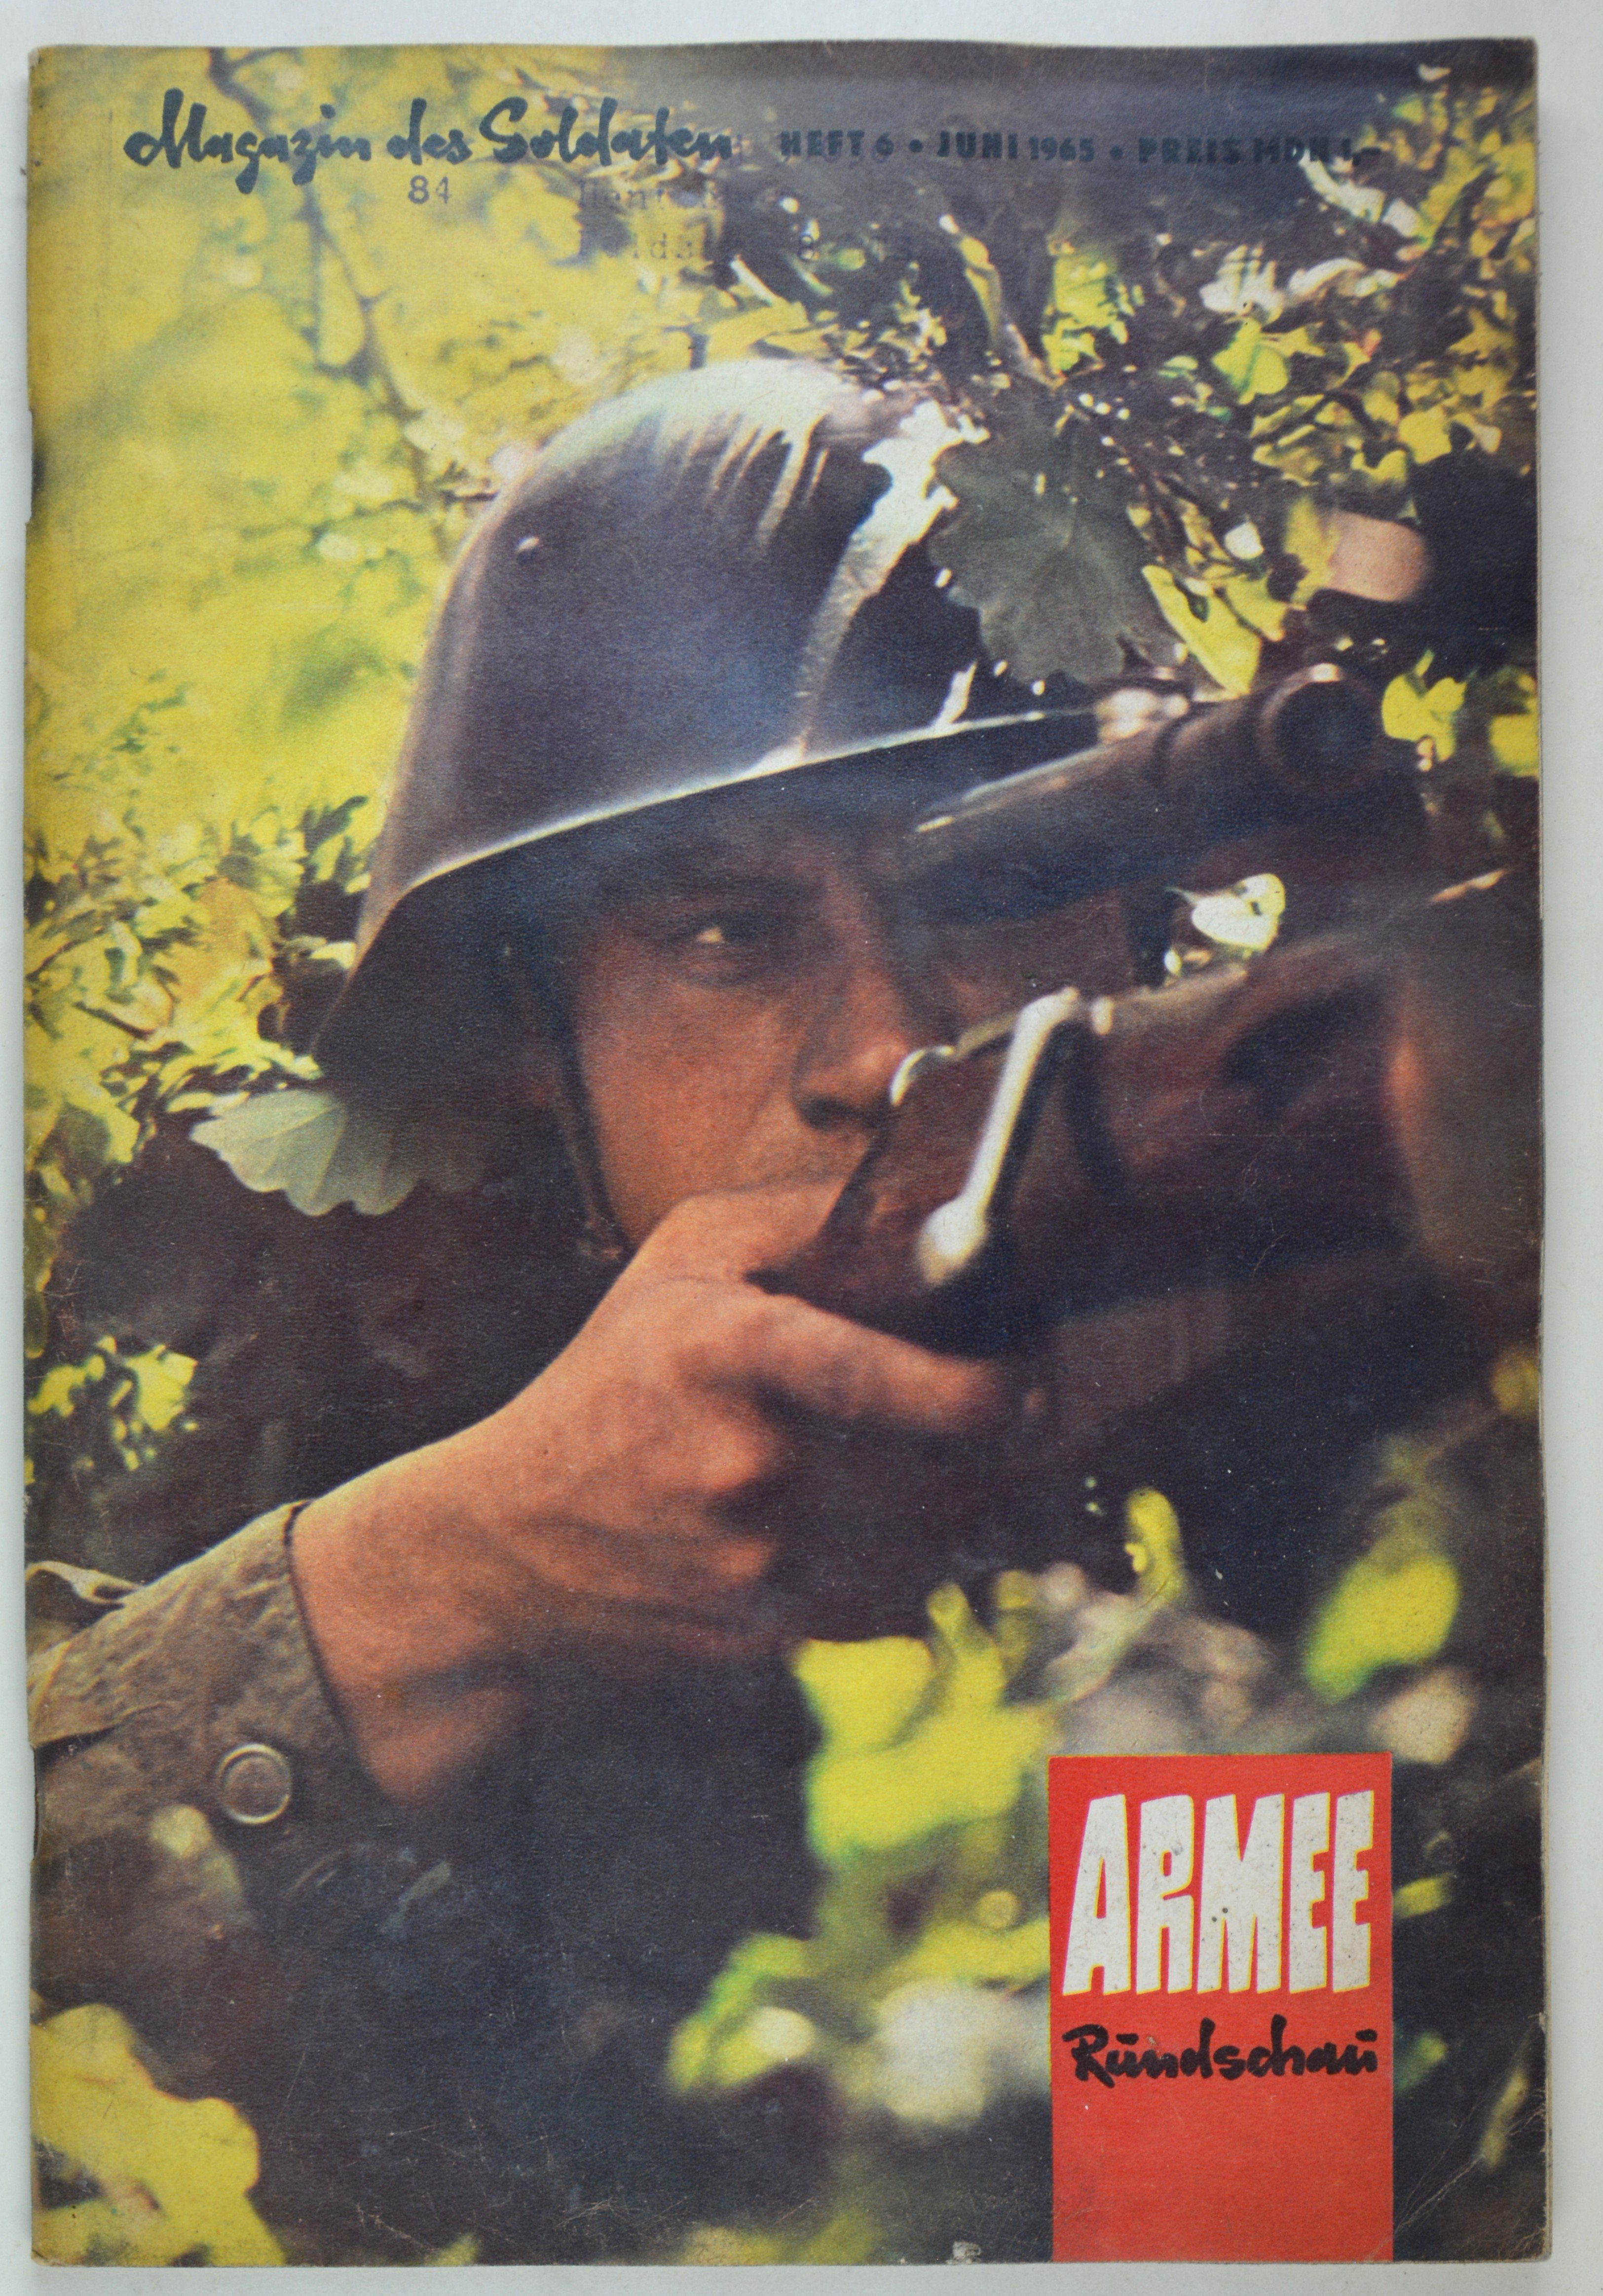 Armeerundschau - Magazin des Soldaten (1965), Heft 6 (DDR Geschichtsmuseum im Dokumentationszentrum Perleberg CC BY-SA)